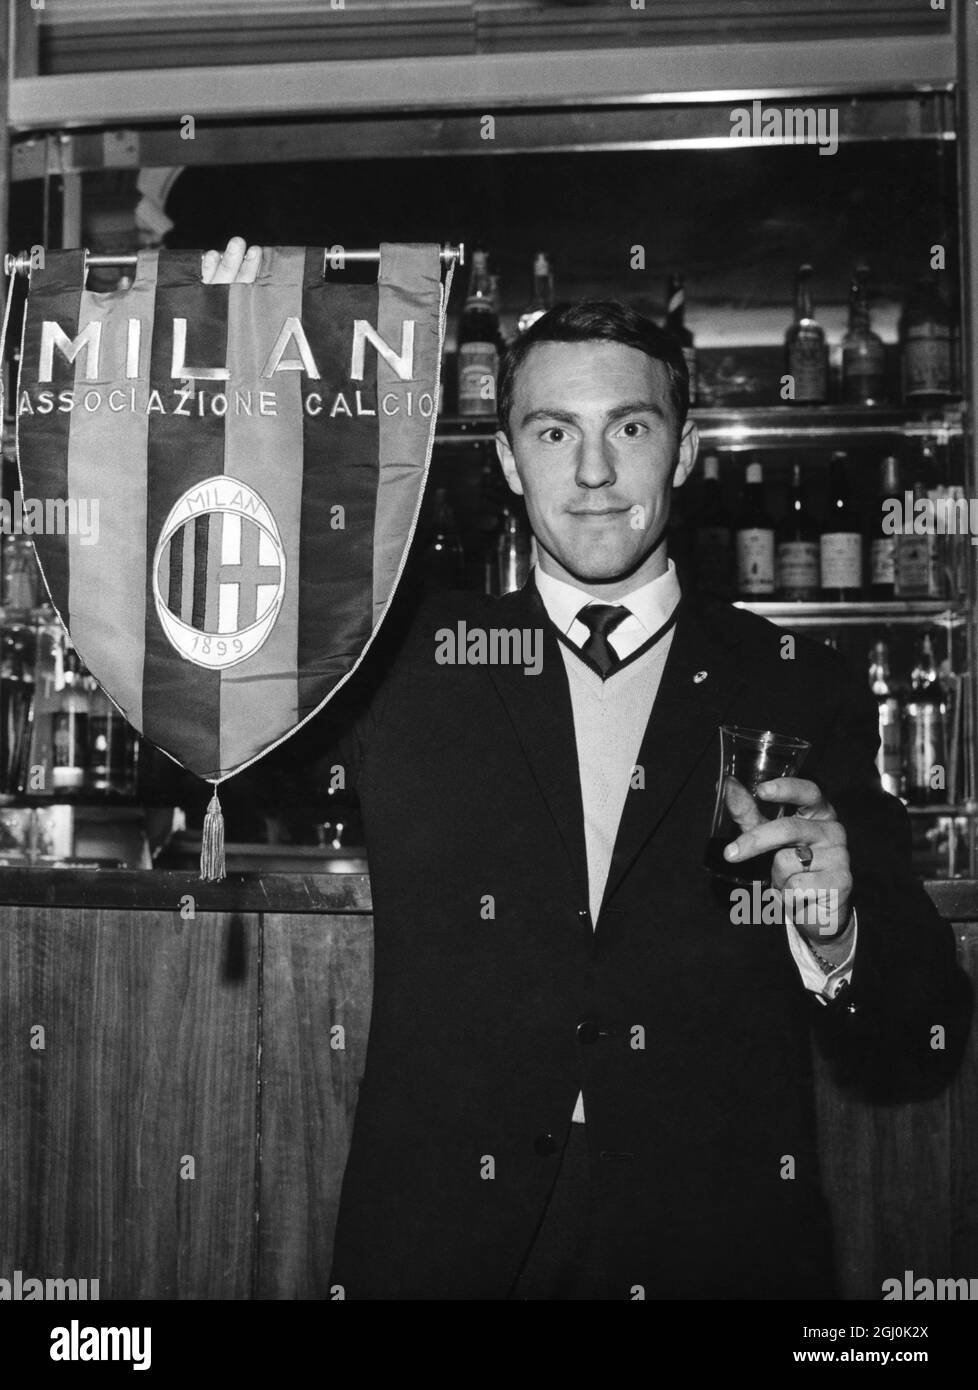 Jimmy Greaves, England und Chelsea, die vom Milan Soccer Club unterzeichnet wurden, hält eine Mannschaftsflagge von Milan Soccer, als er auf einen Toast seiner neuen Mannschaftskollegen bei seiner Ankunft in Mailand reagiert. Mai 1961 Stockfoto